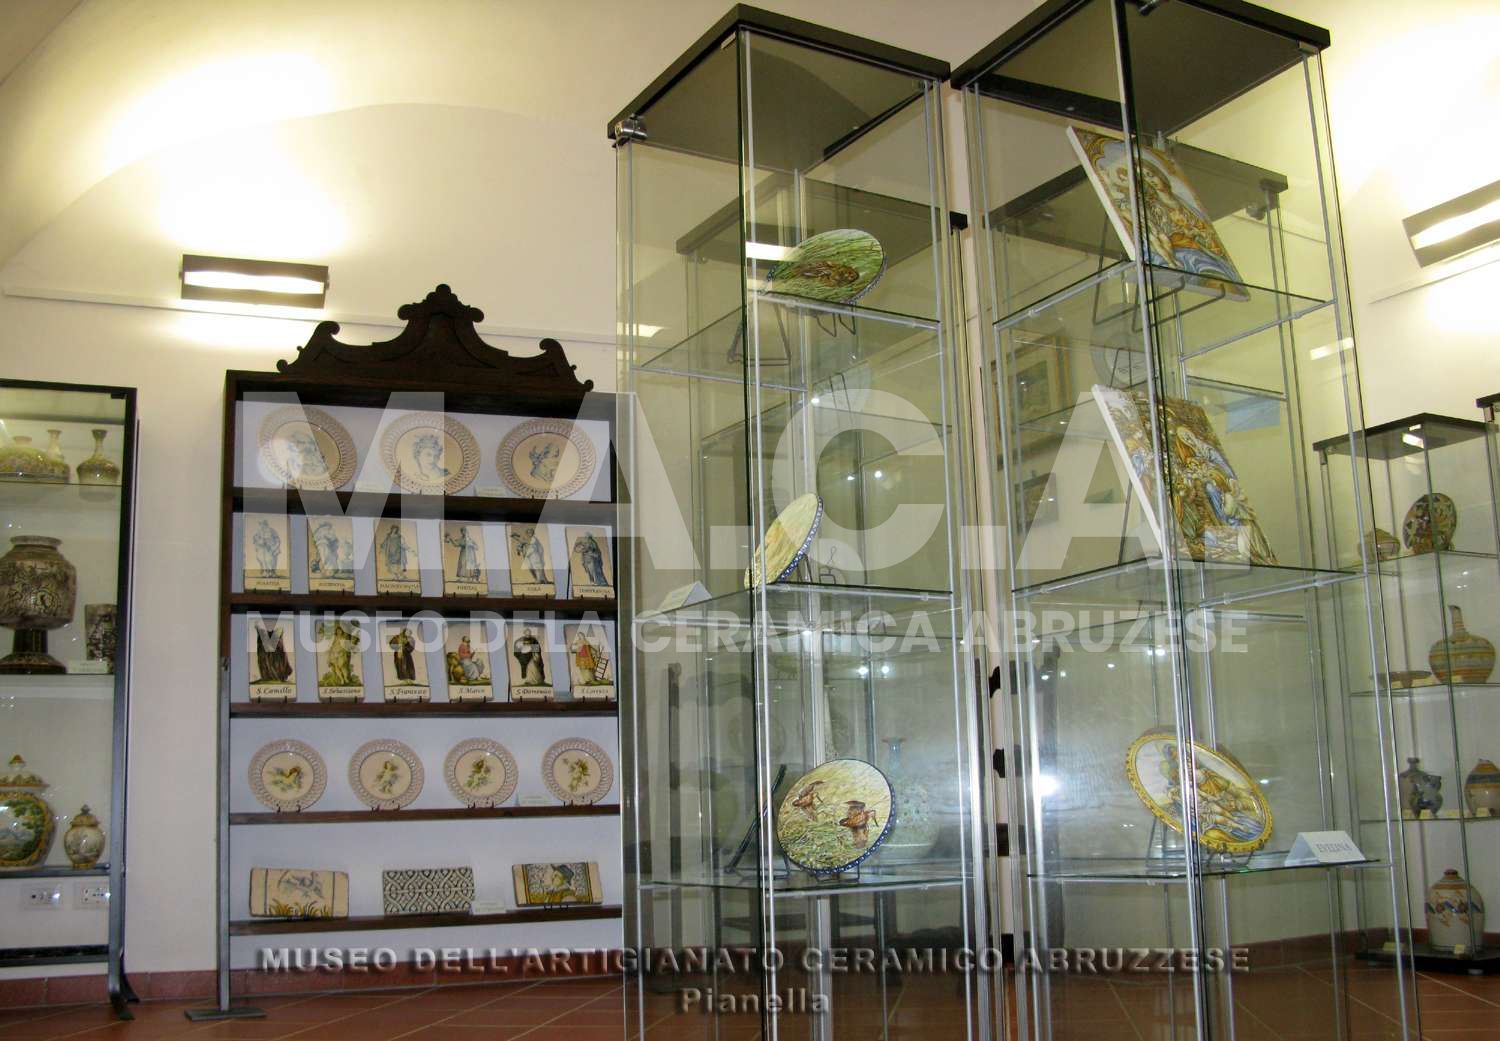 Museo dell'Artigianato Ceramico Abruzzese